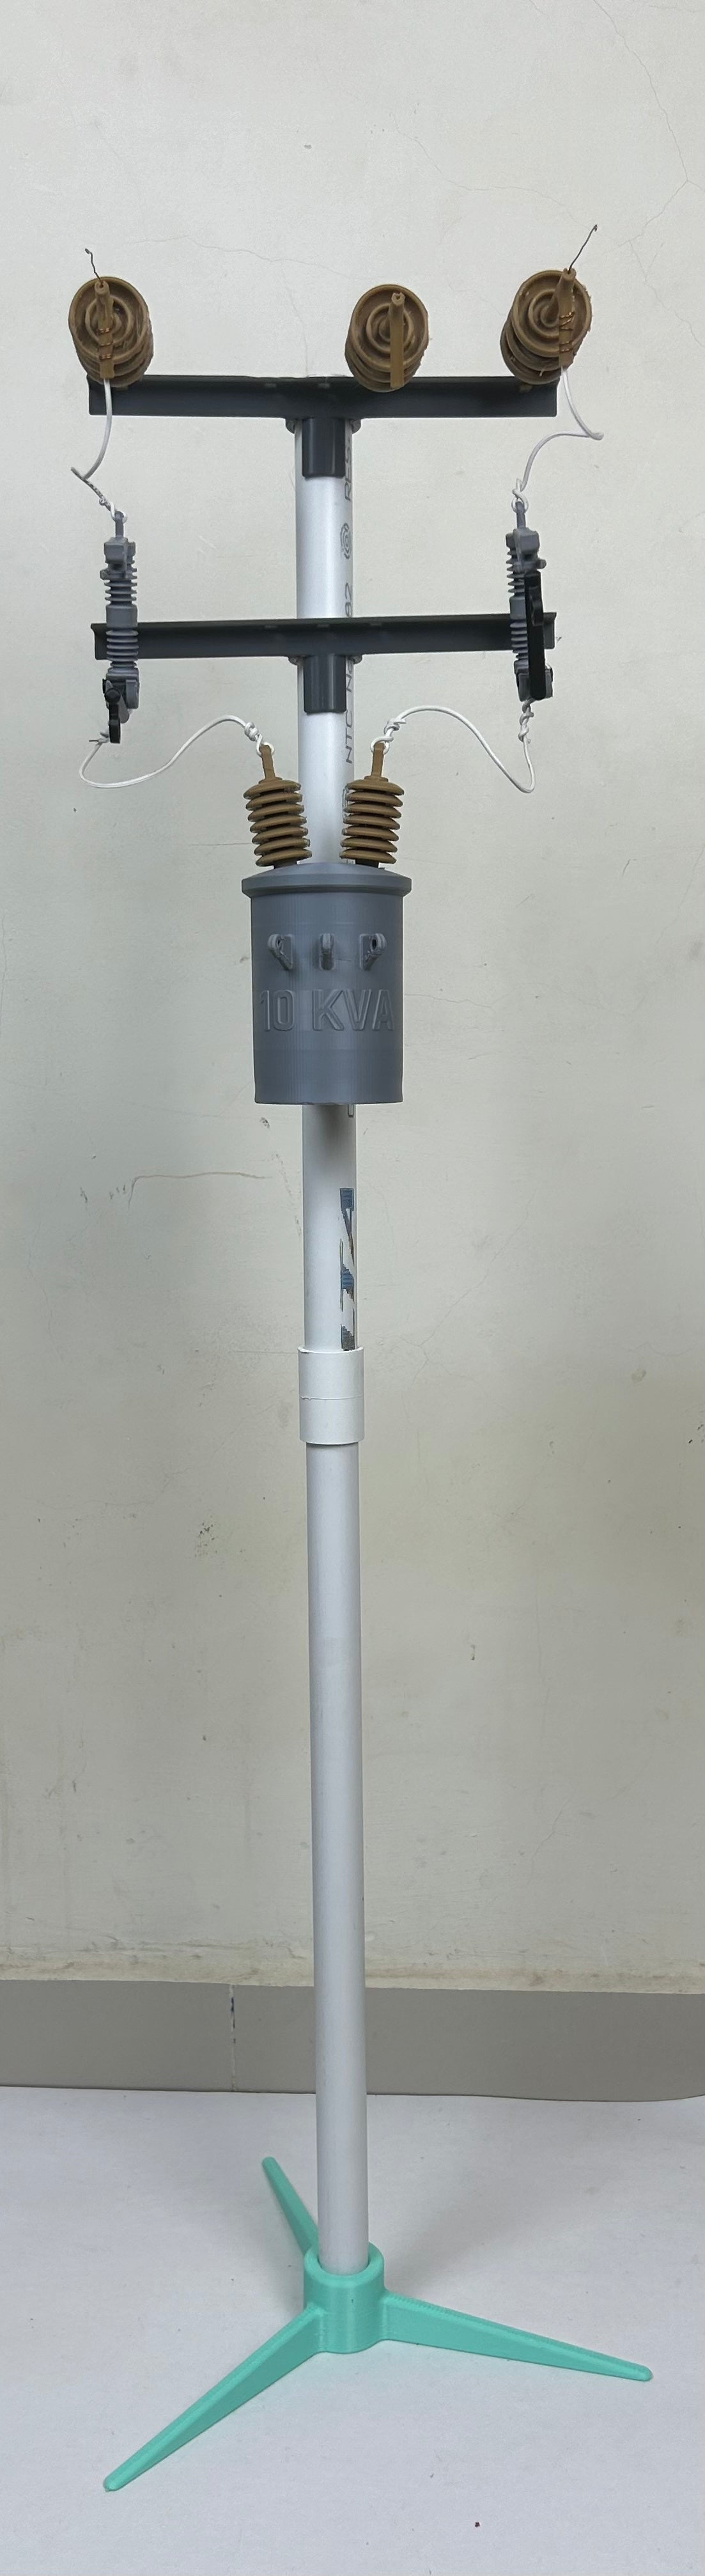 modelo poste eléctrico